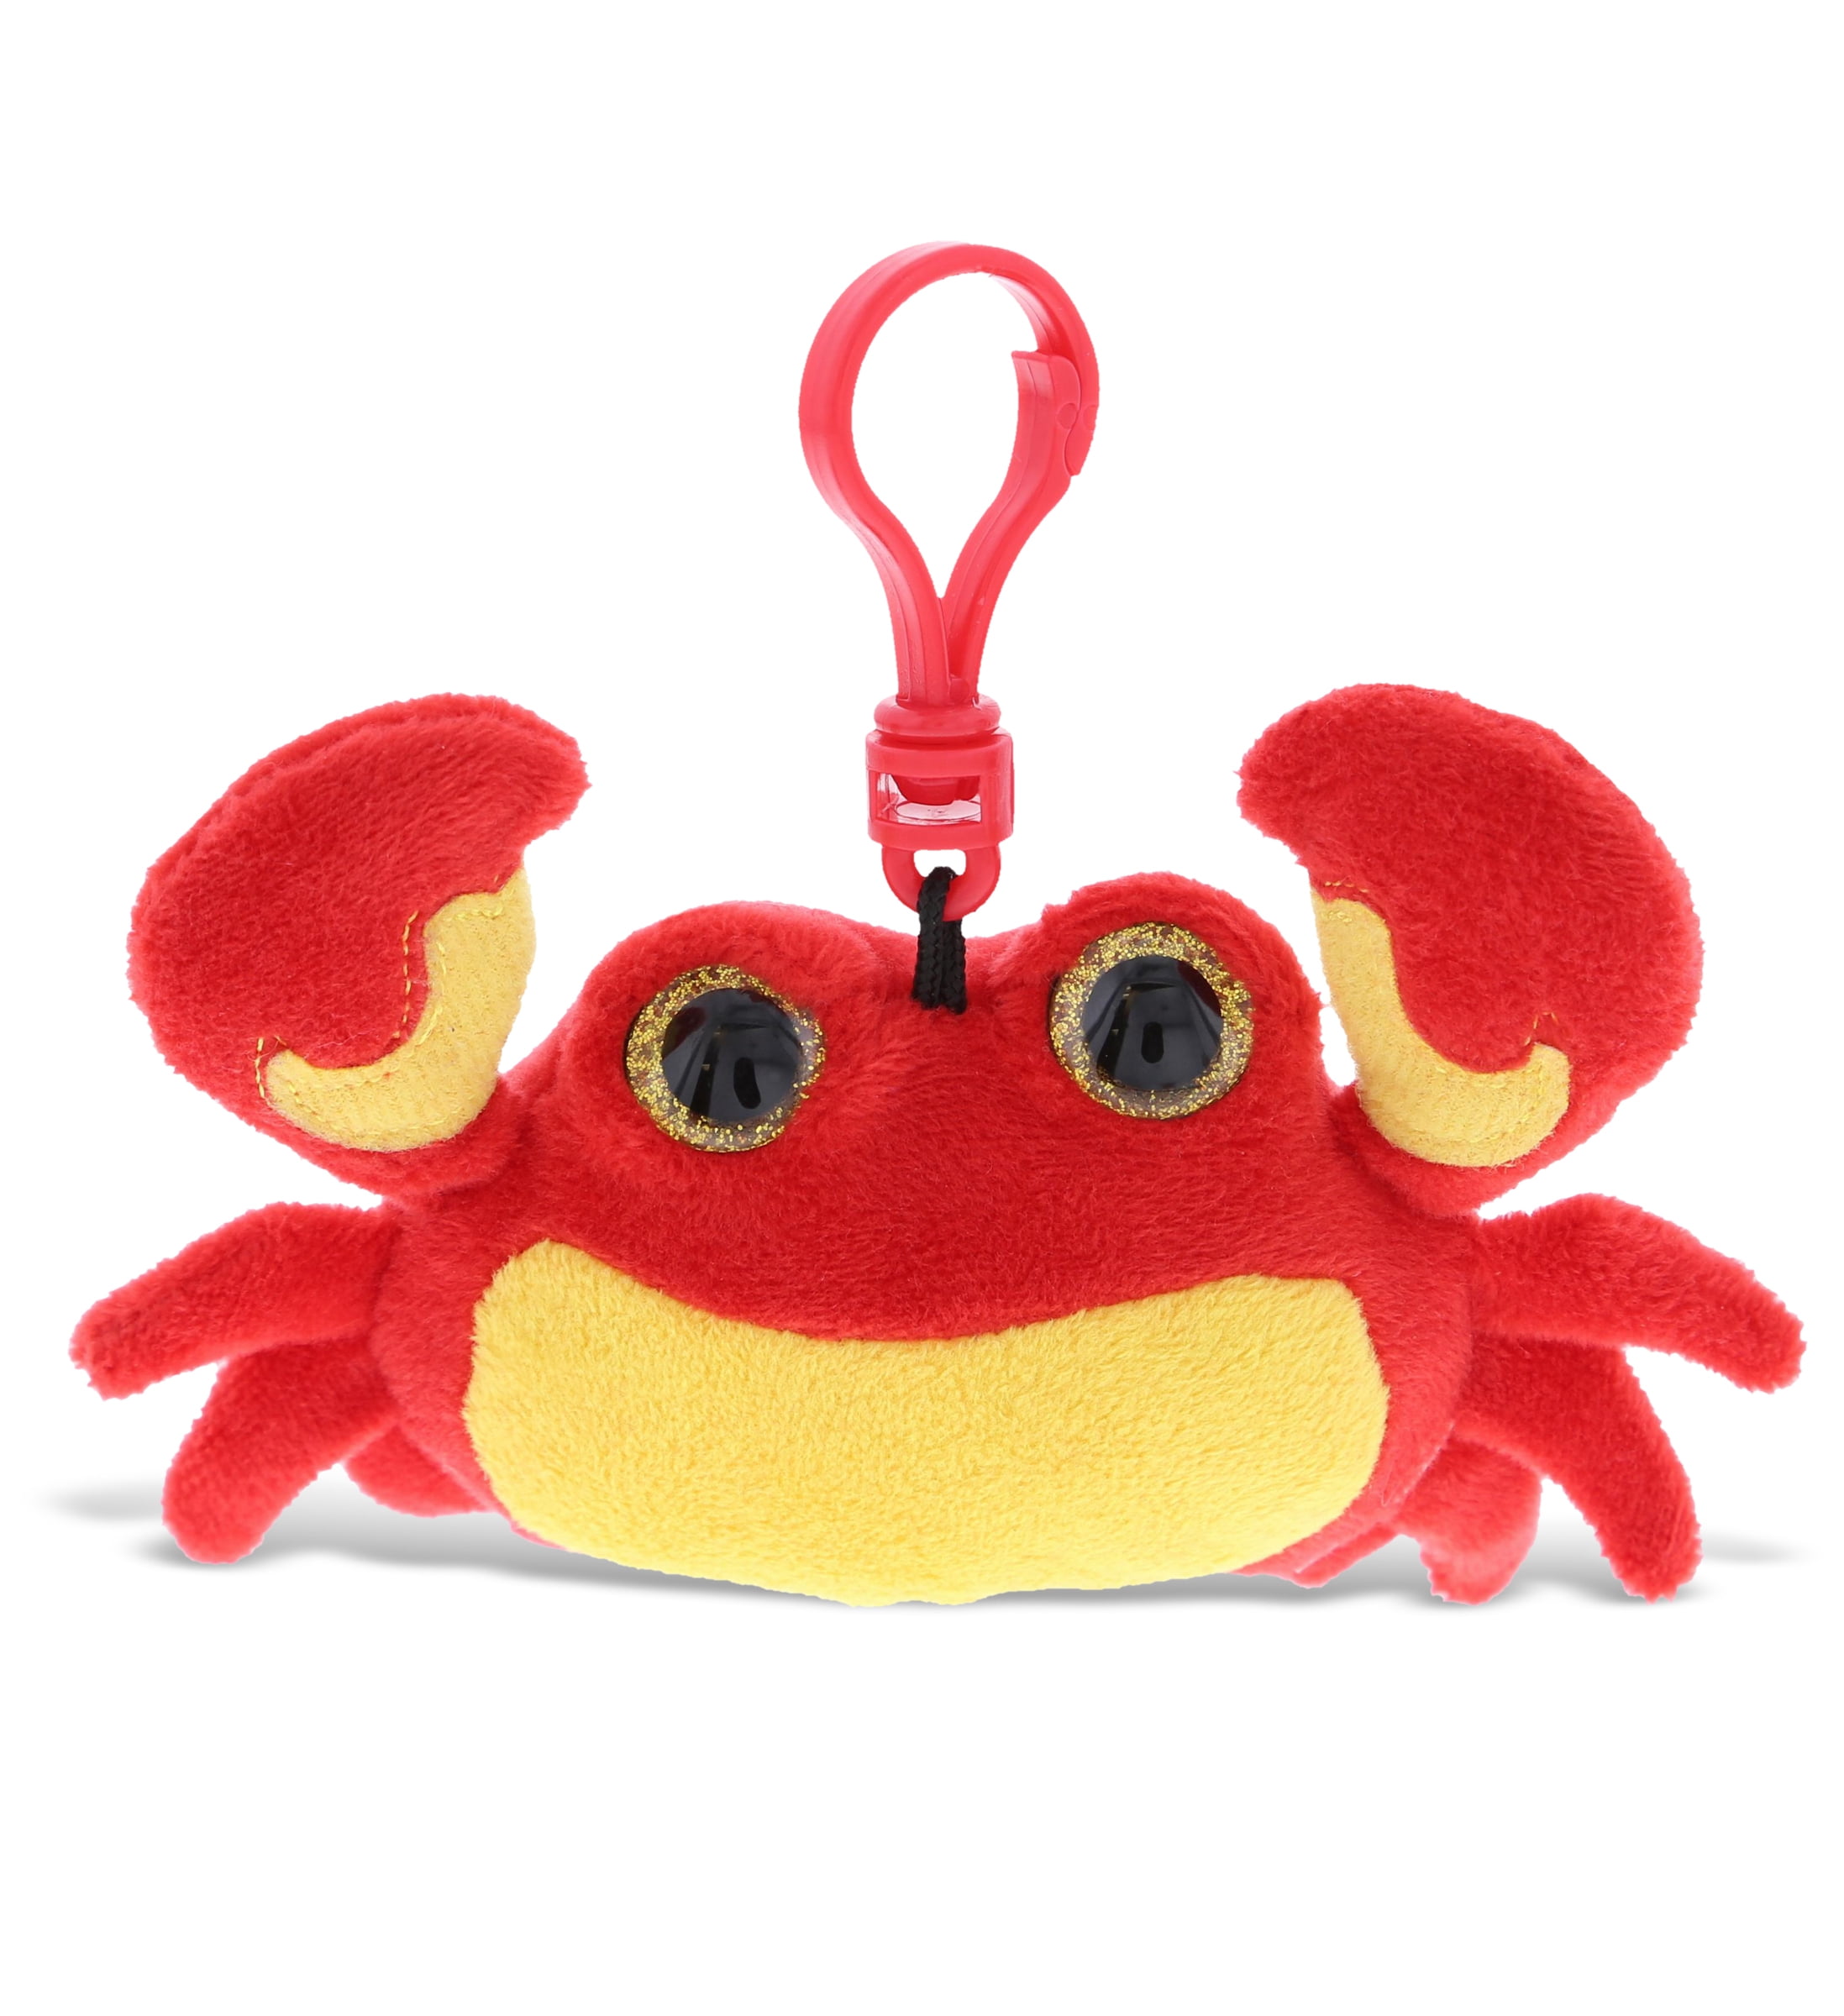 Sea Life Accessory DolliBu Red Lobster Plush Big Eyes Keychain Stuffed Animal 